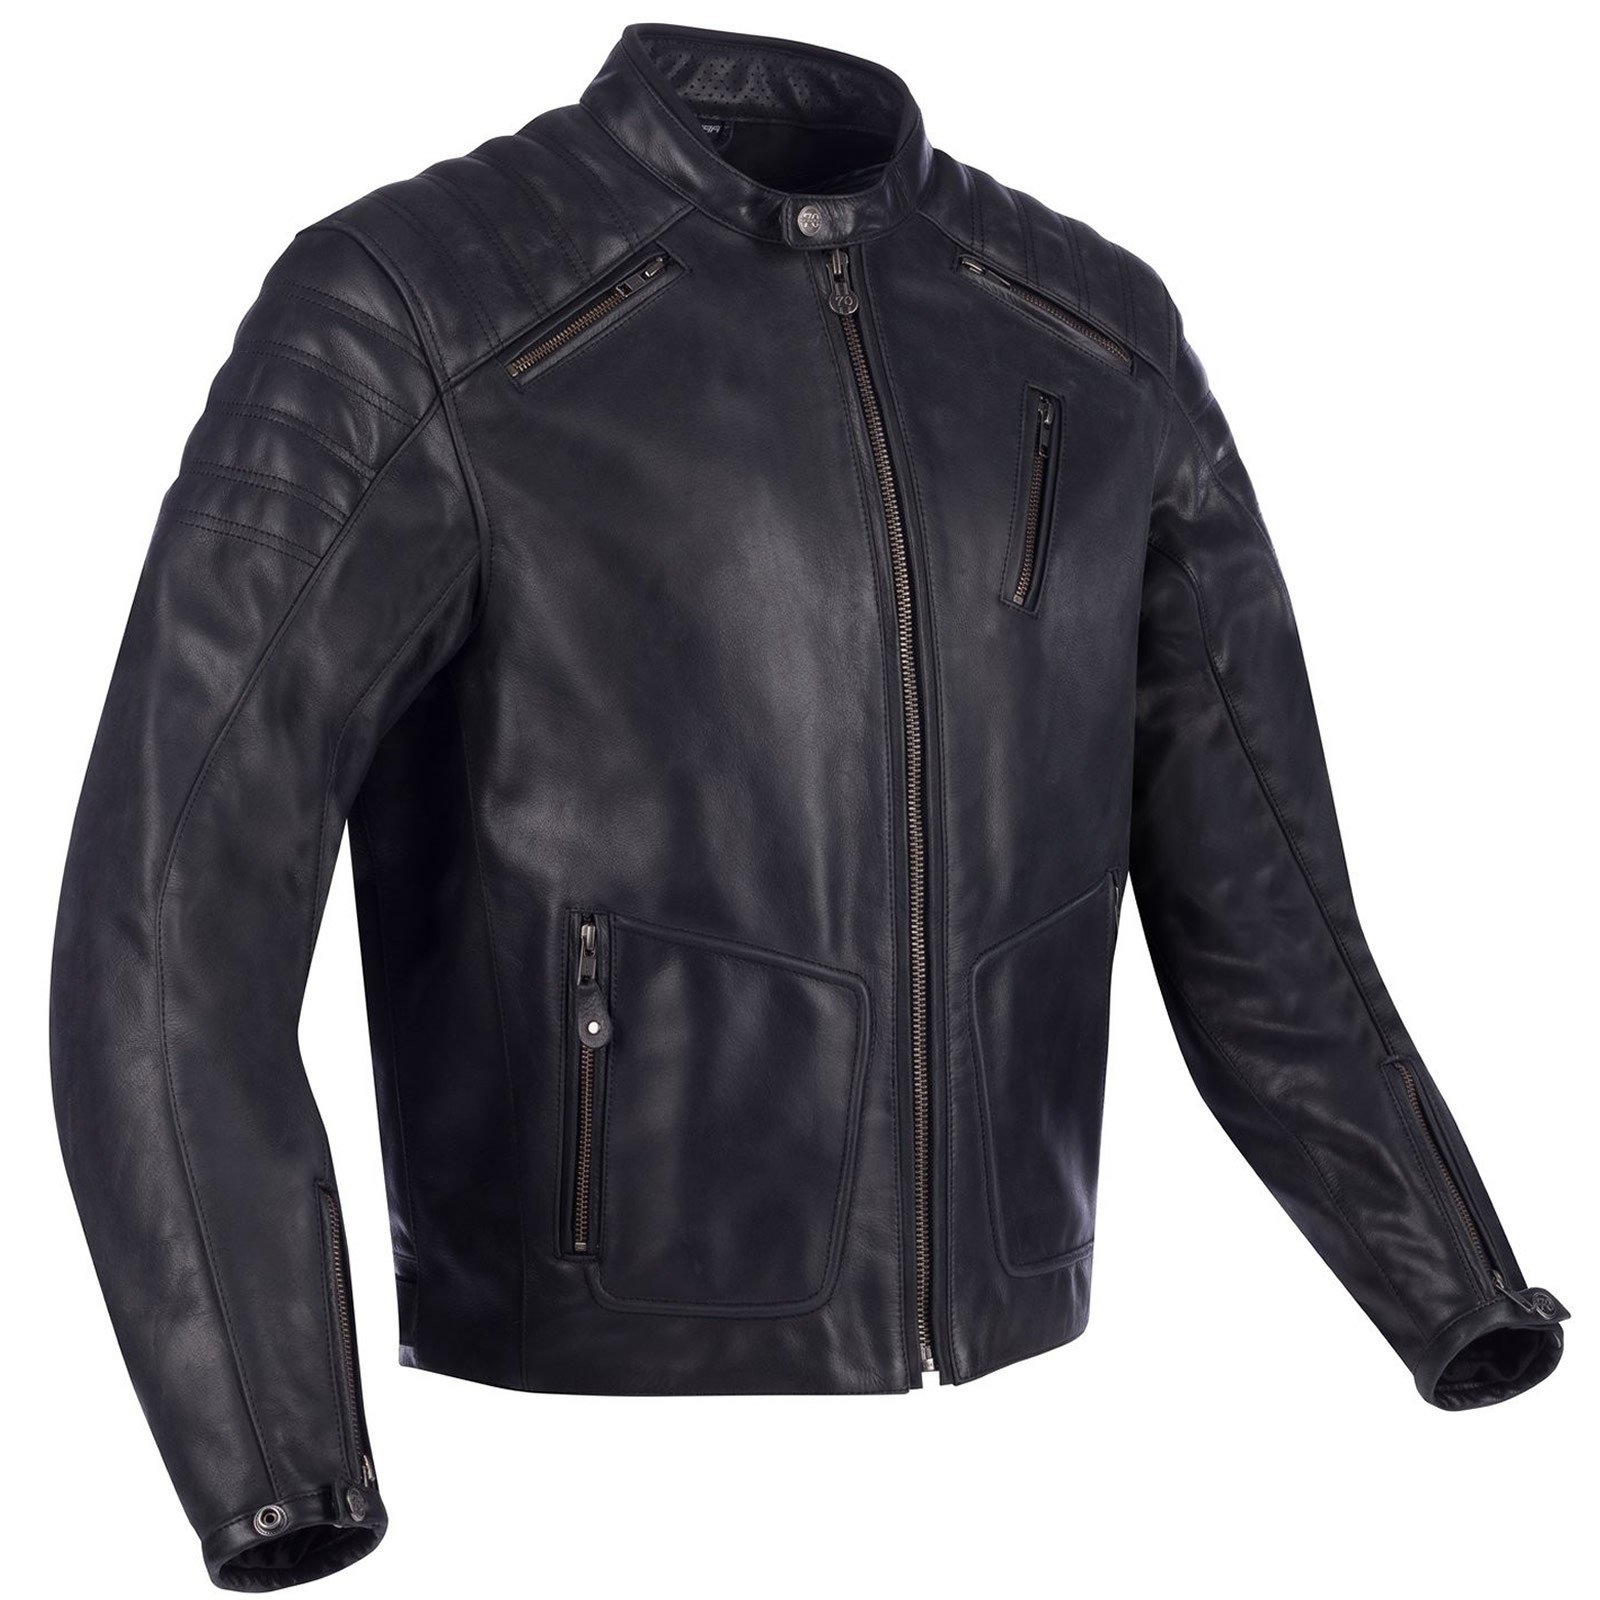 Image of Segura Angus Jacket Black Size 2XL ID 3660815166253